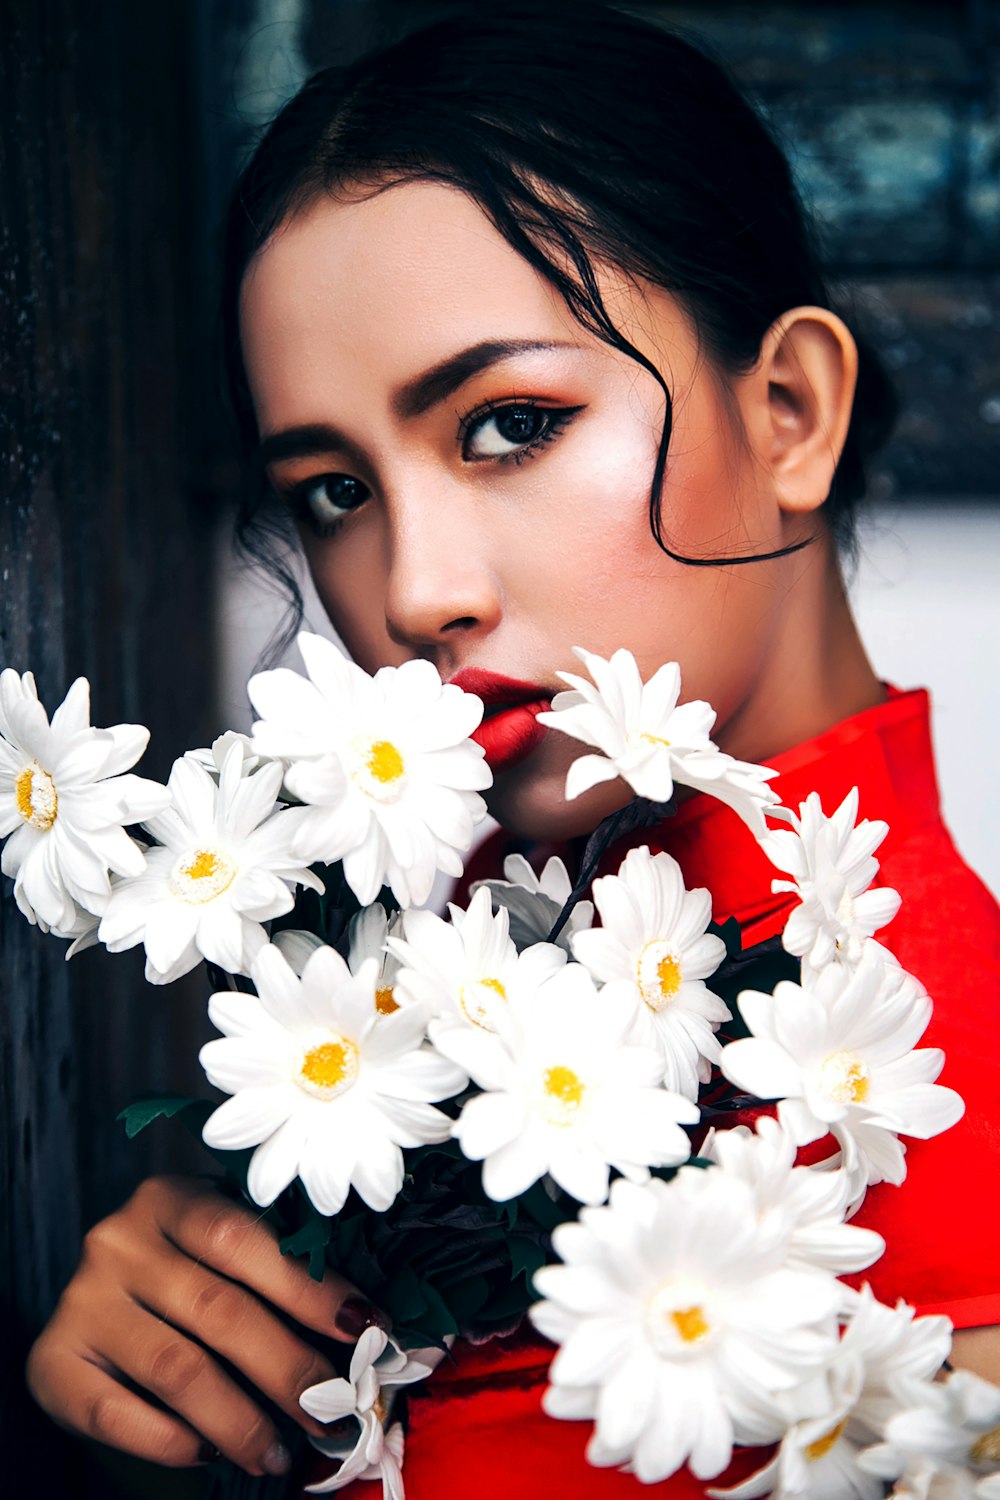 하얀 데이지 꽃을 들고 빨간 셔츠를 입은 여자